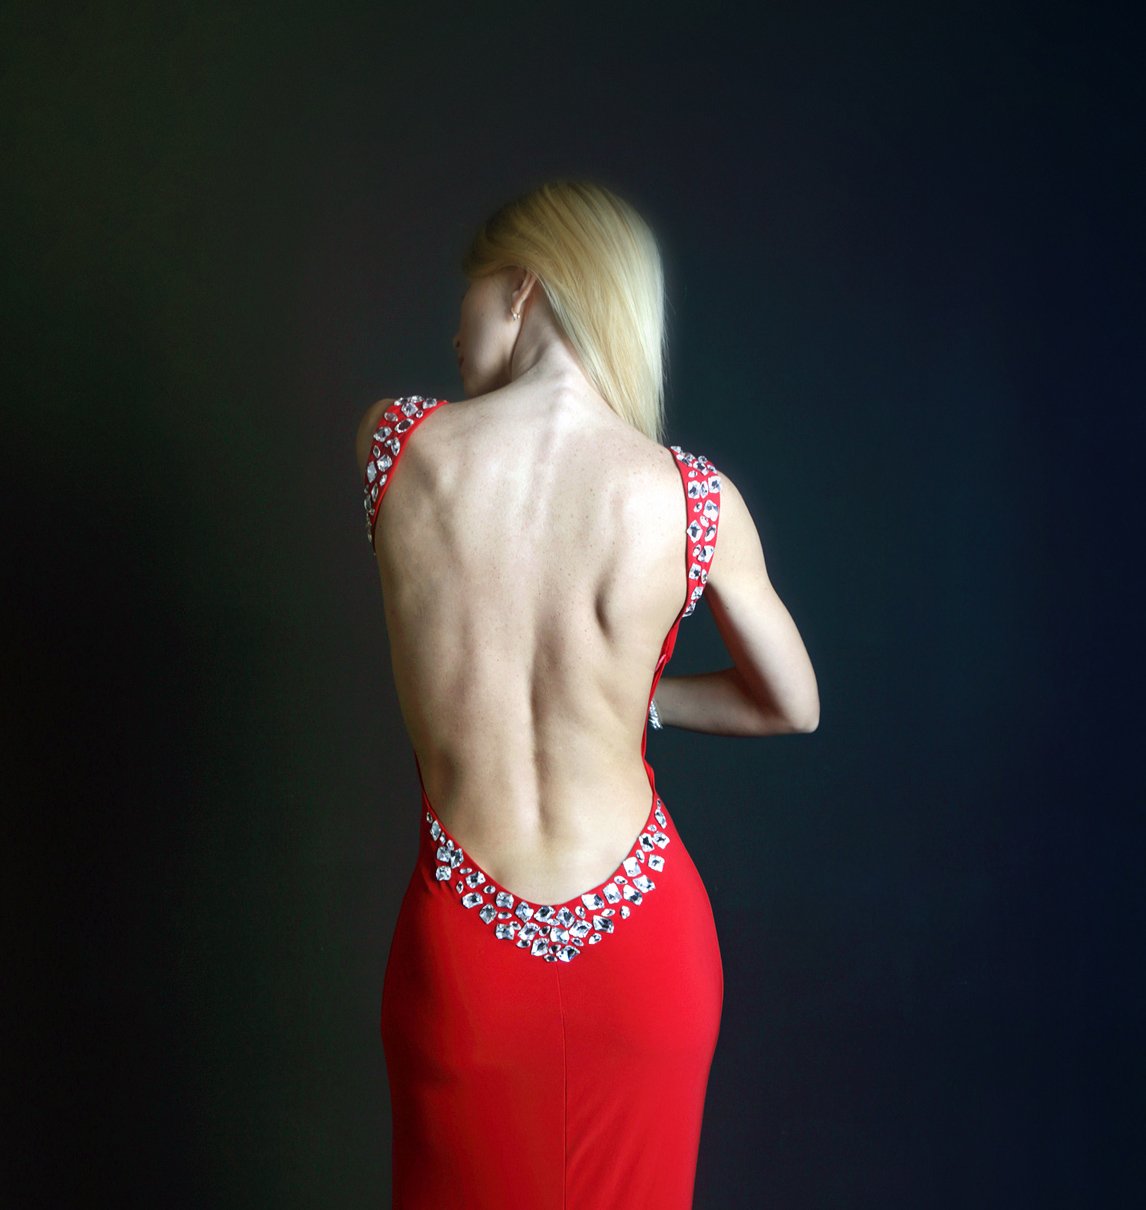 девушка, красивая, спина, оголенная спина, мышцы, рельеф, блондинка, длинные волосы, русые, красное платье, красный. , Постонен Екатерина